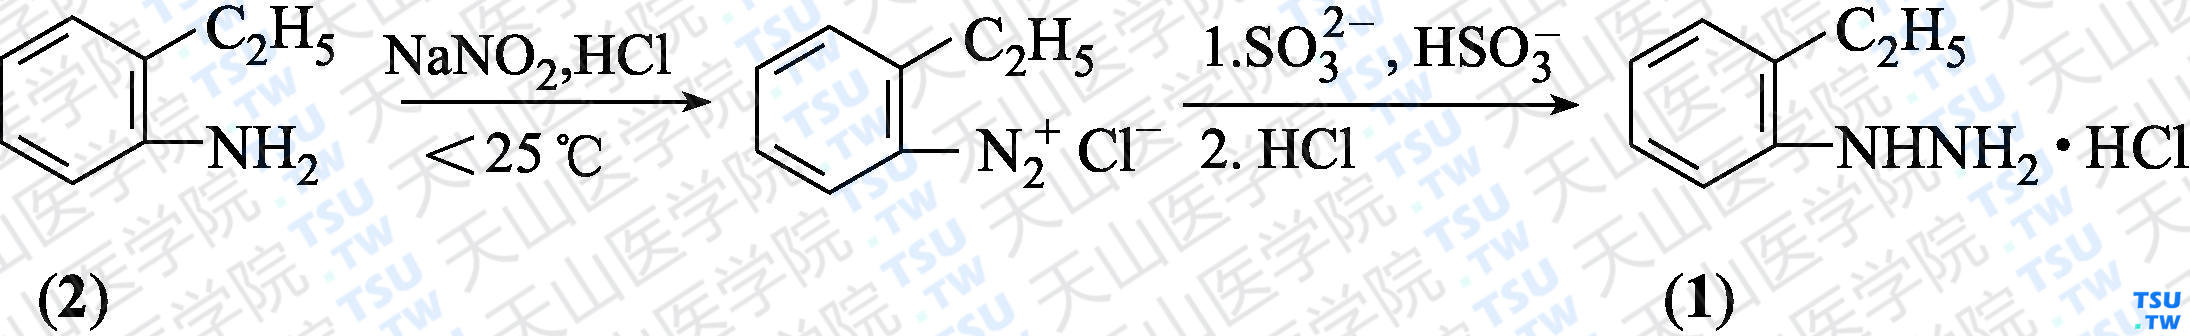 邻乙基苯肼盐酸盐（分子式：C<sub>8</sub>H<sub>12</sub>N<sub>2</sub>·HCl）的合成方法路线及其结构式